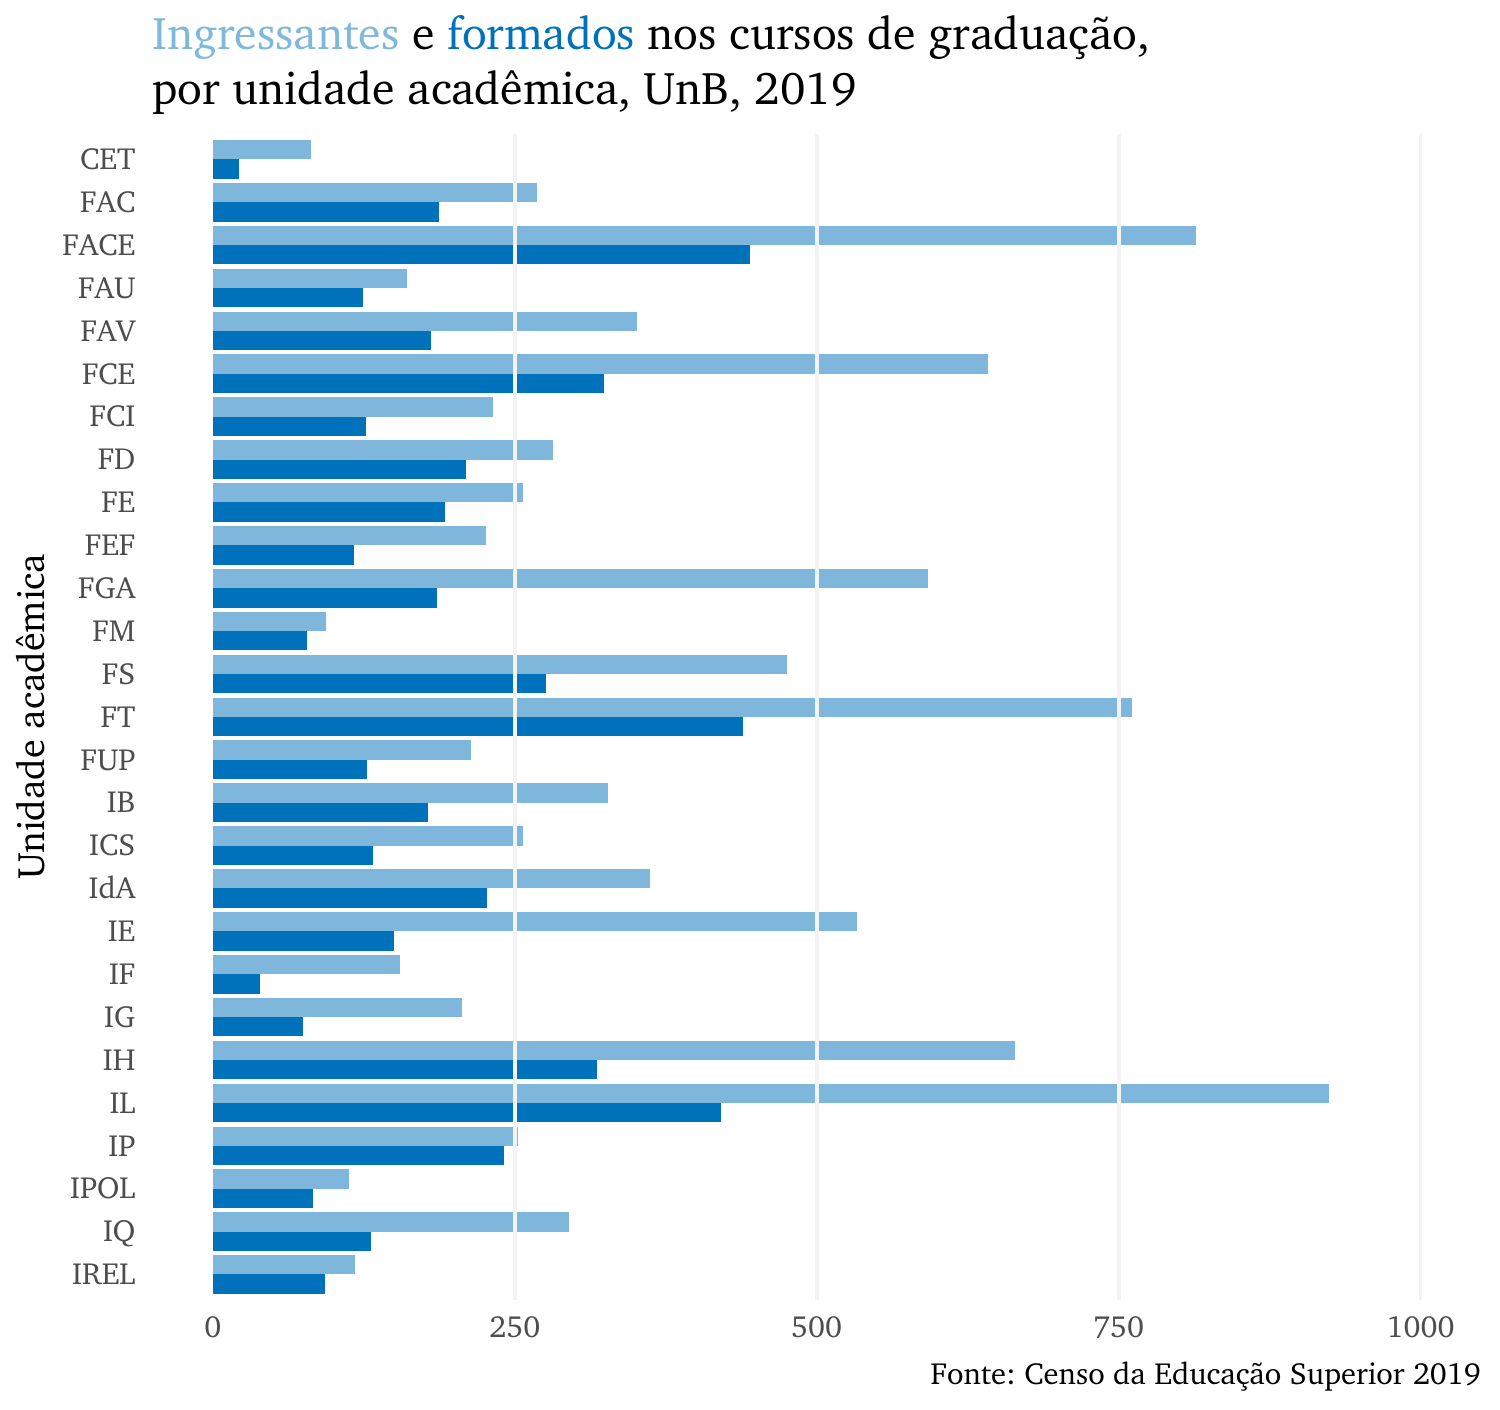 Ingressantes e formados nos cursos de graduação, por unidade acadêmica, UnB, 2019